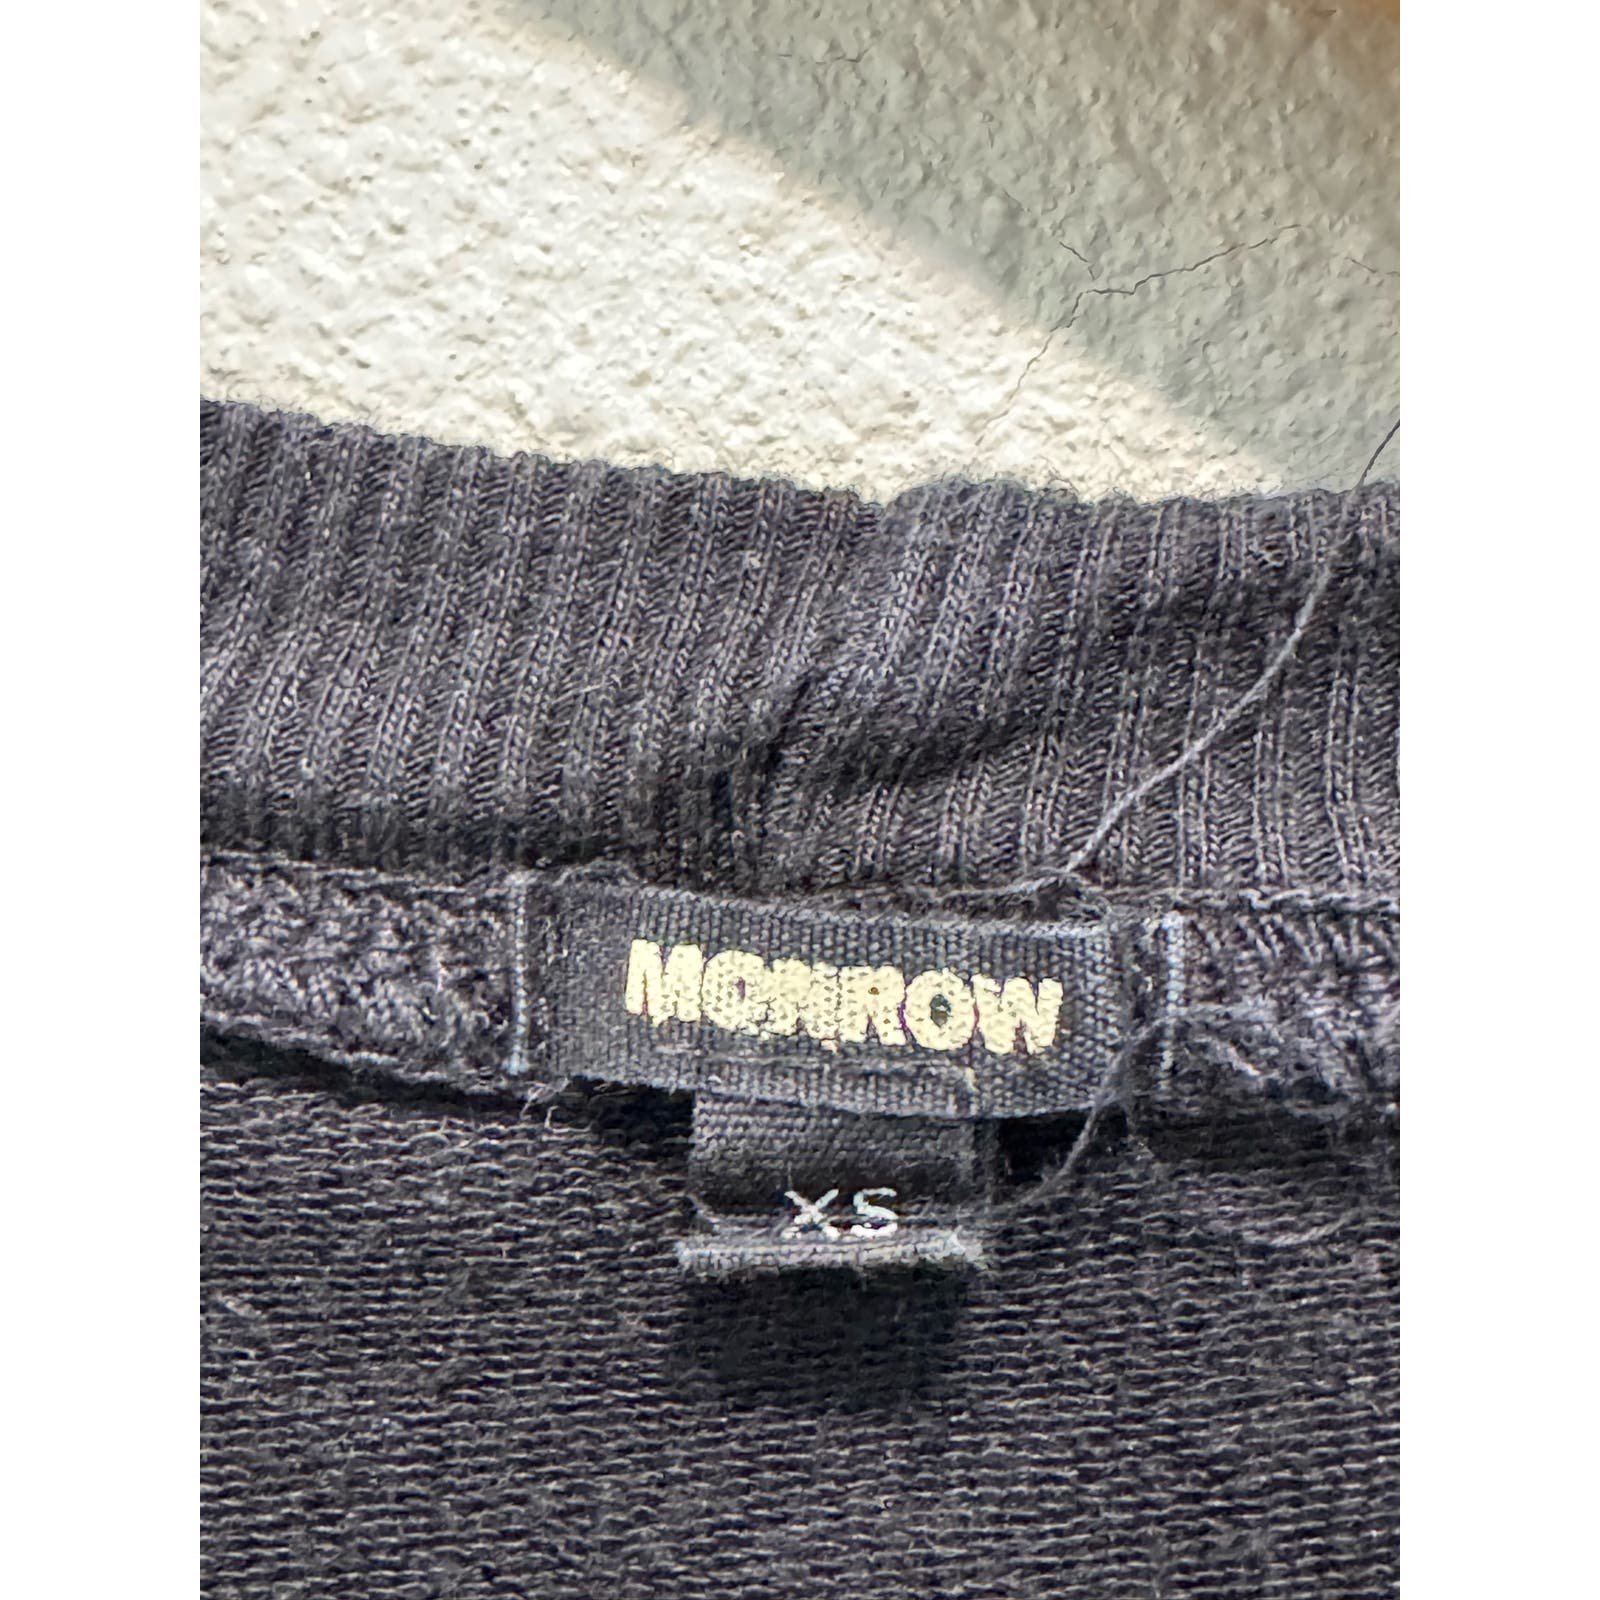 Personality Monrow Cropped, Layered crewneck/t shirt XS FfjnjMtUT hot sale